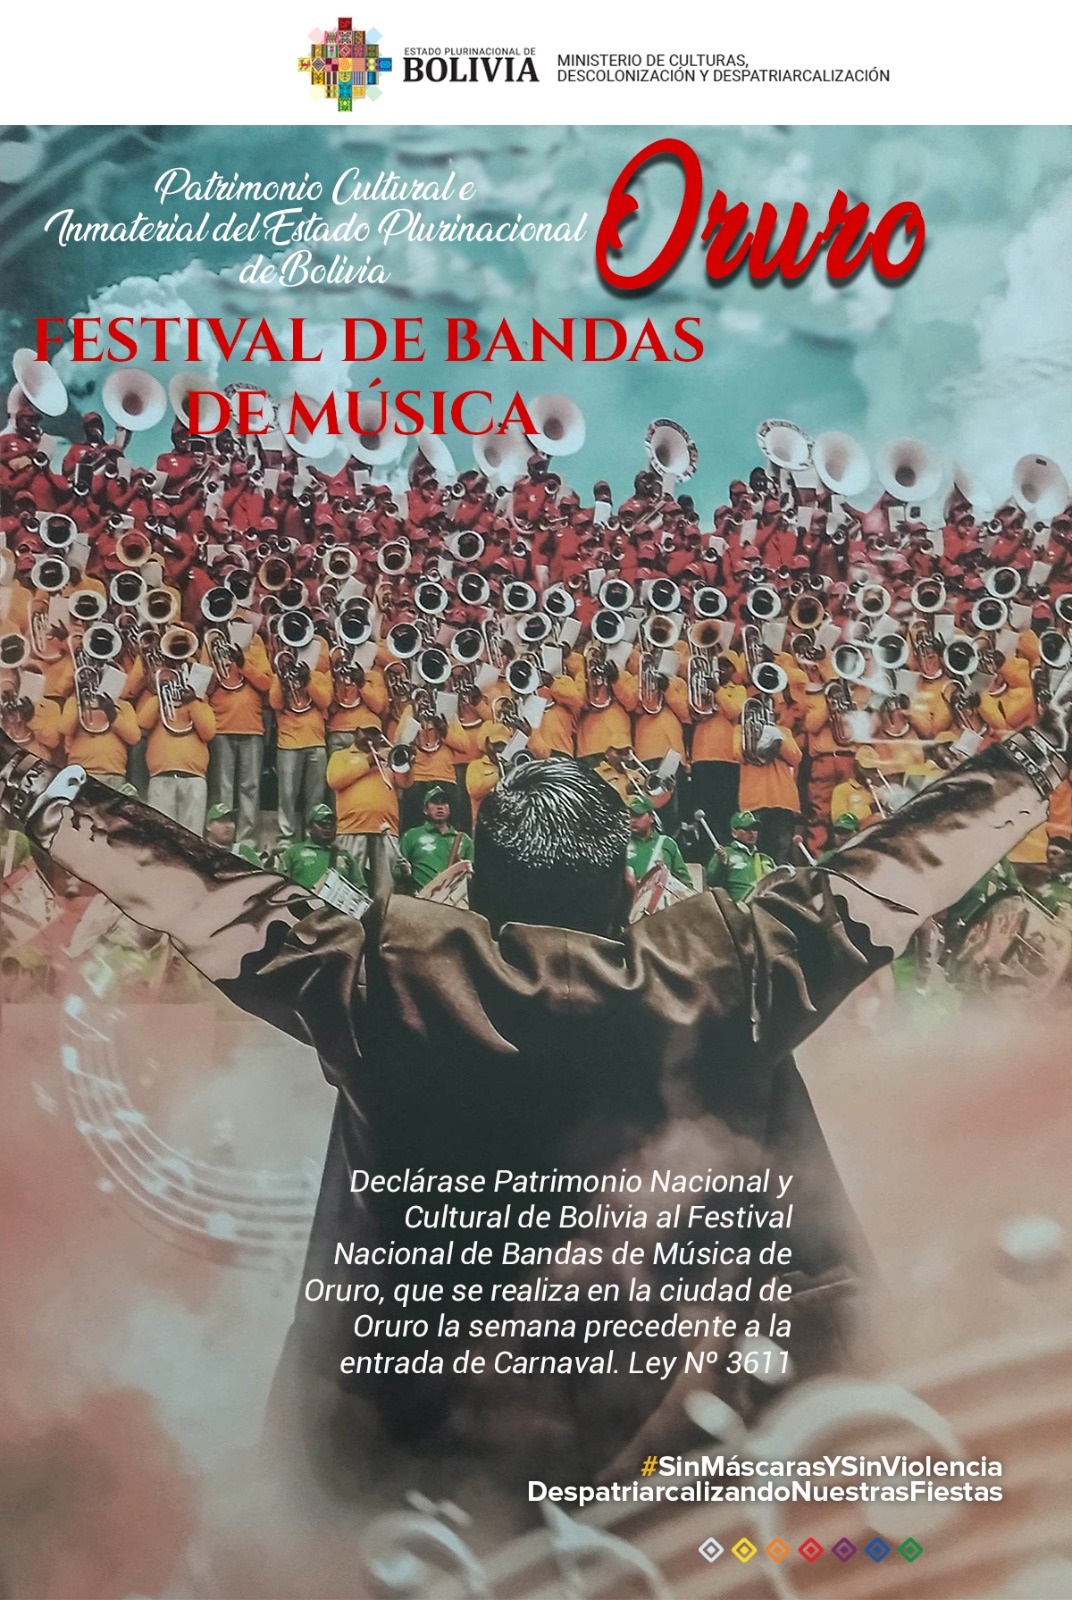 Carnaval de Oruro - Oruro